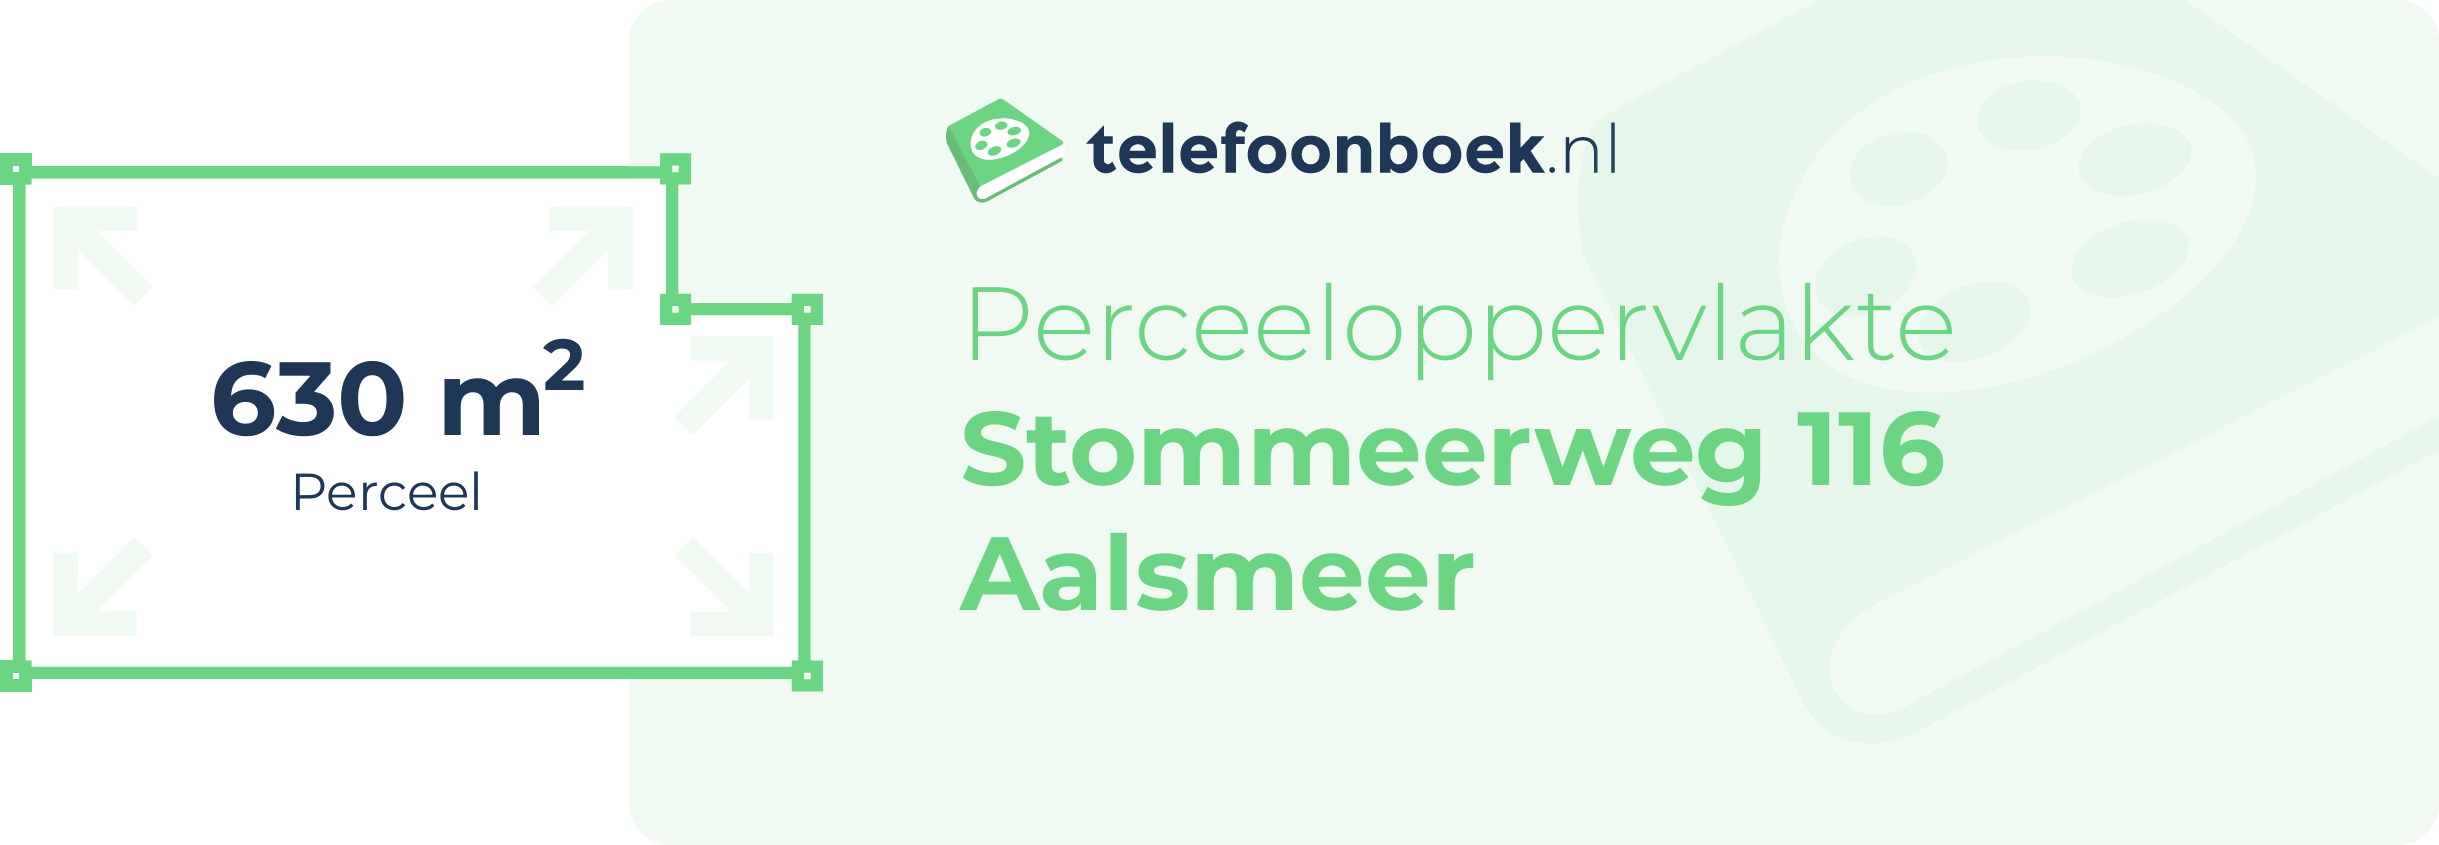 Perceeloppervlakte Stommeerweg 116 Aalsmeer